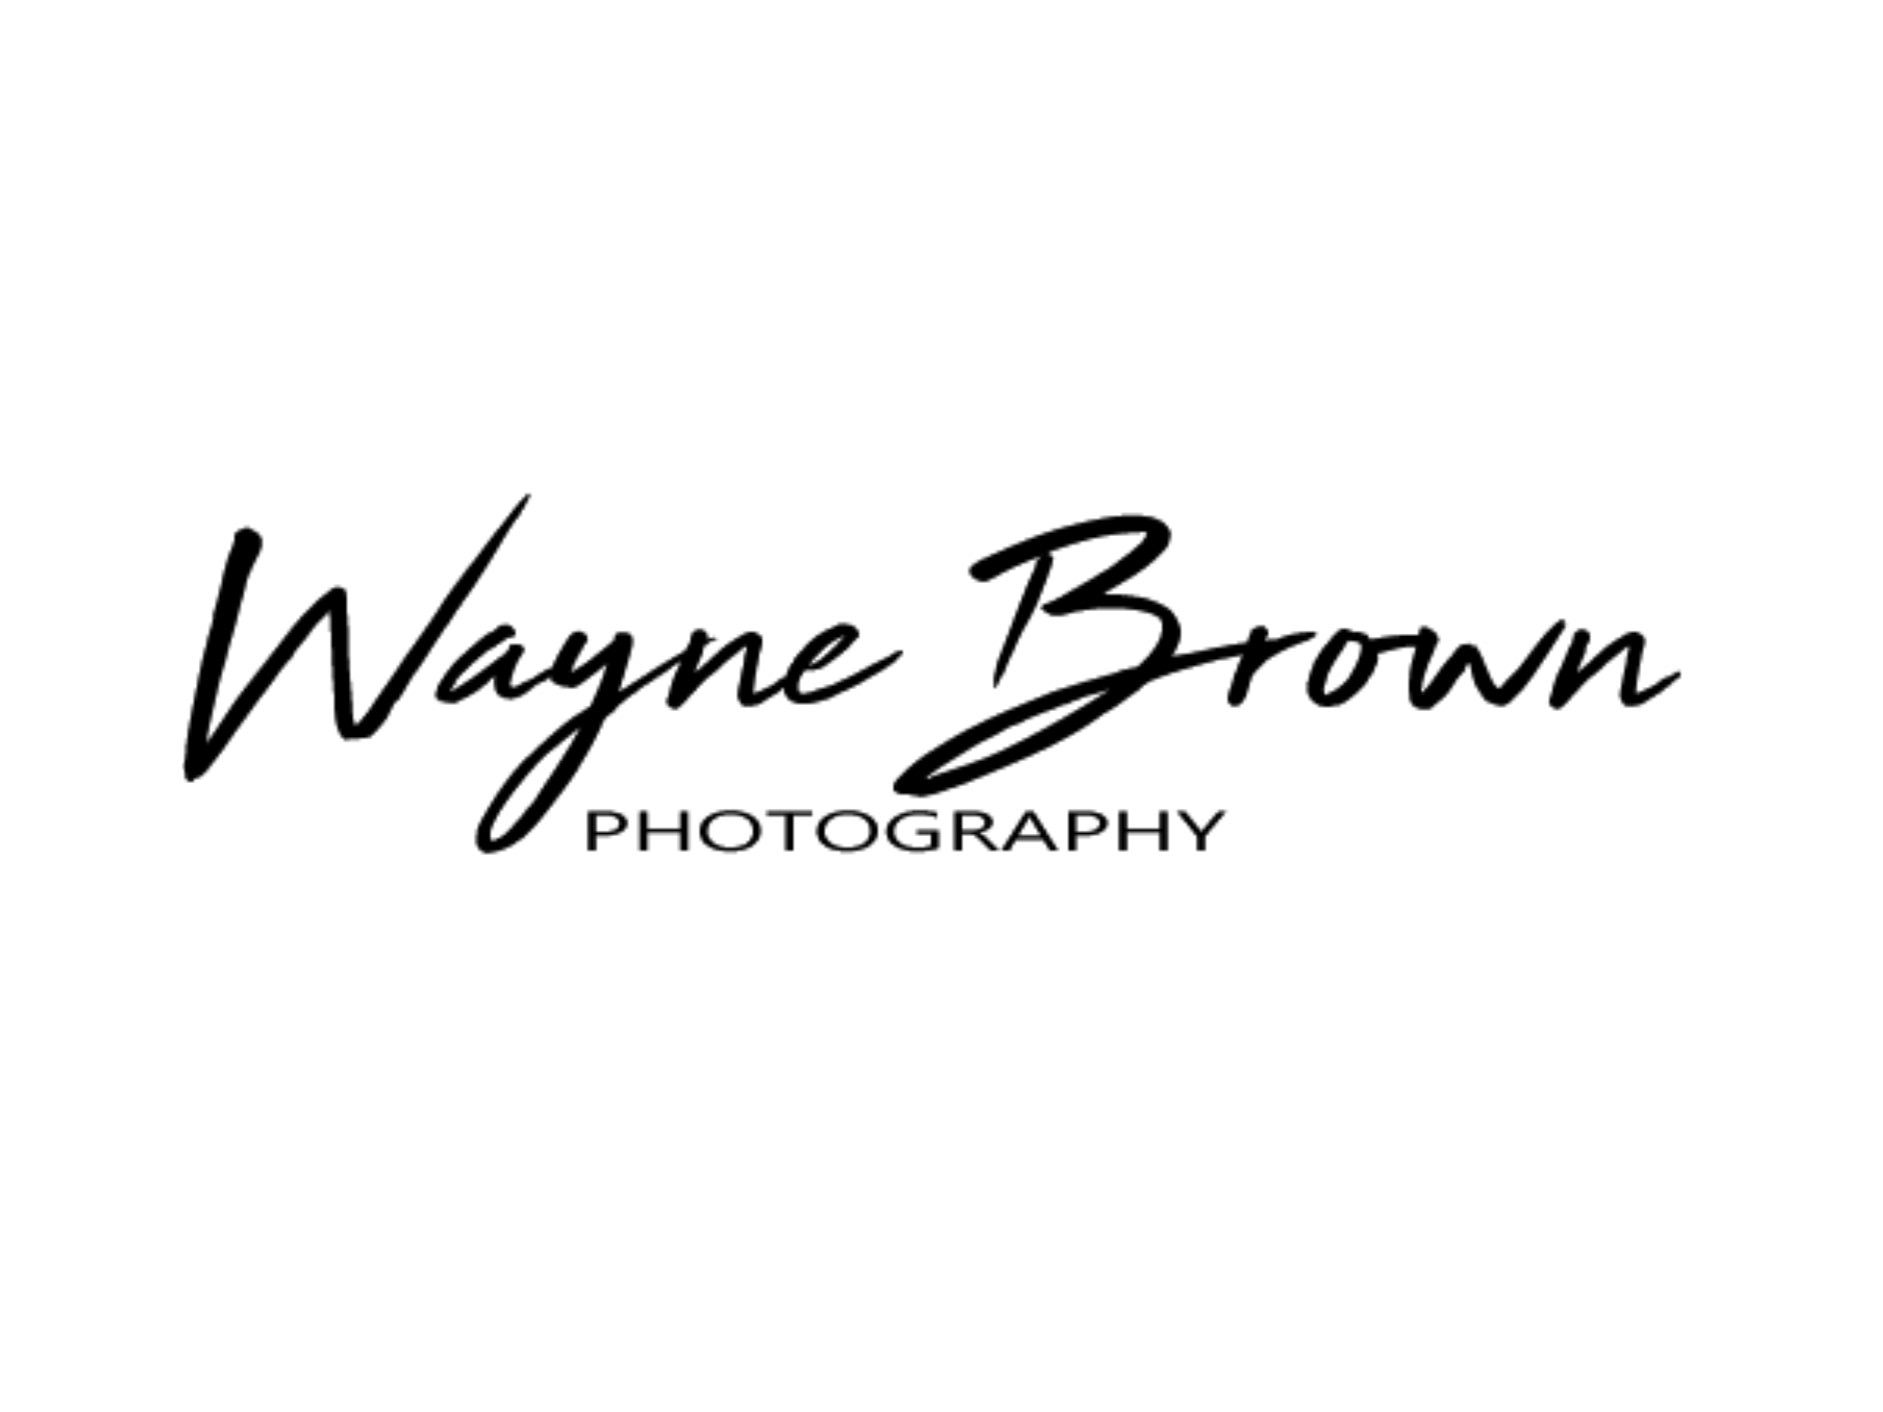 Wayne Brown